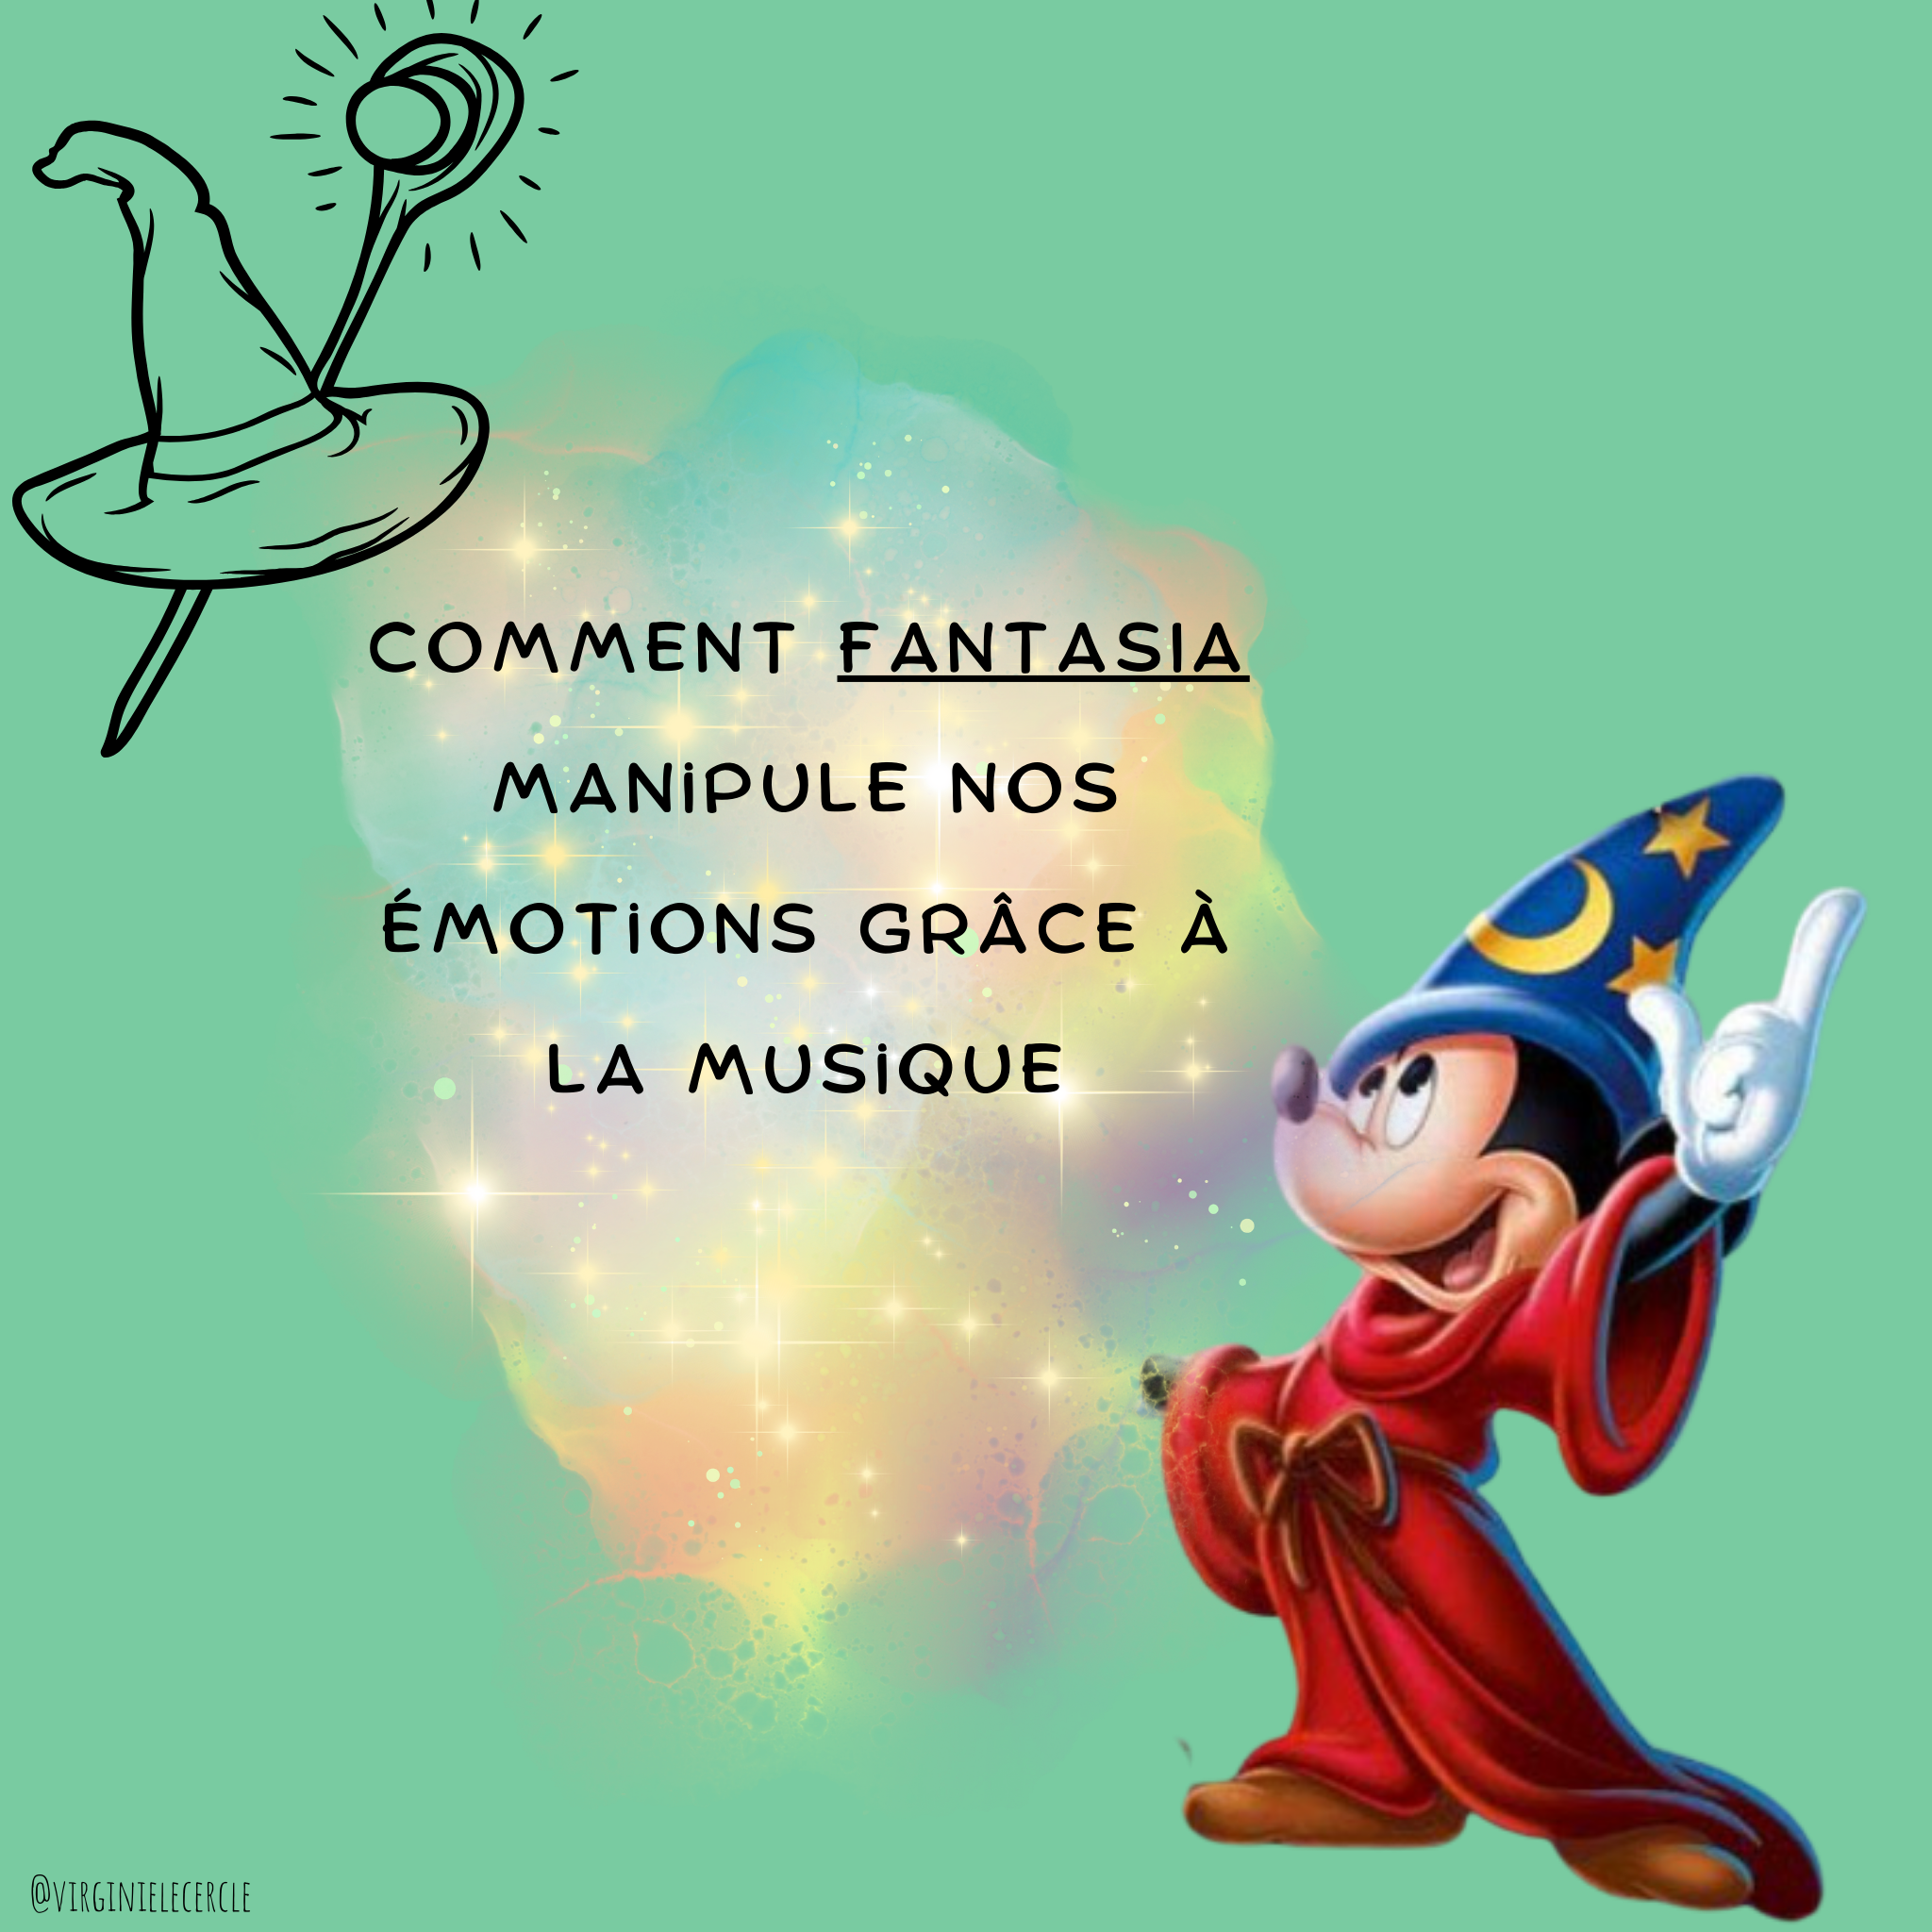 Comment Fantasia utilise la musique pour manipuler nos émotions